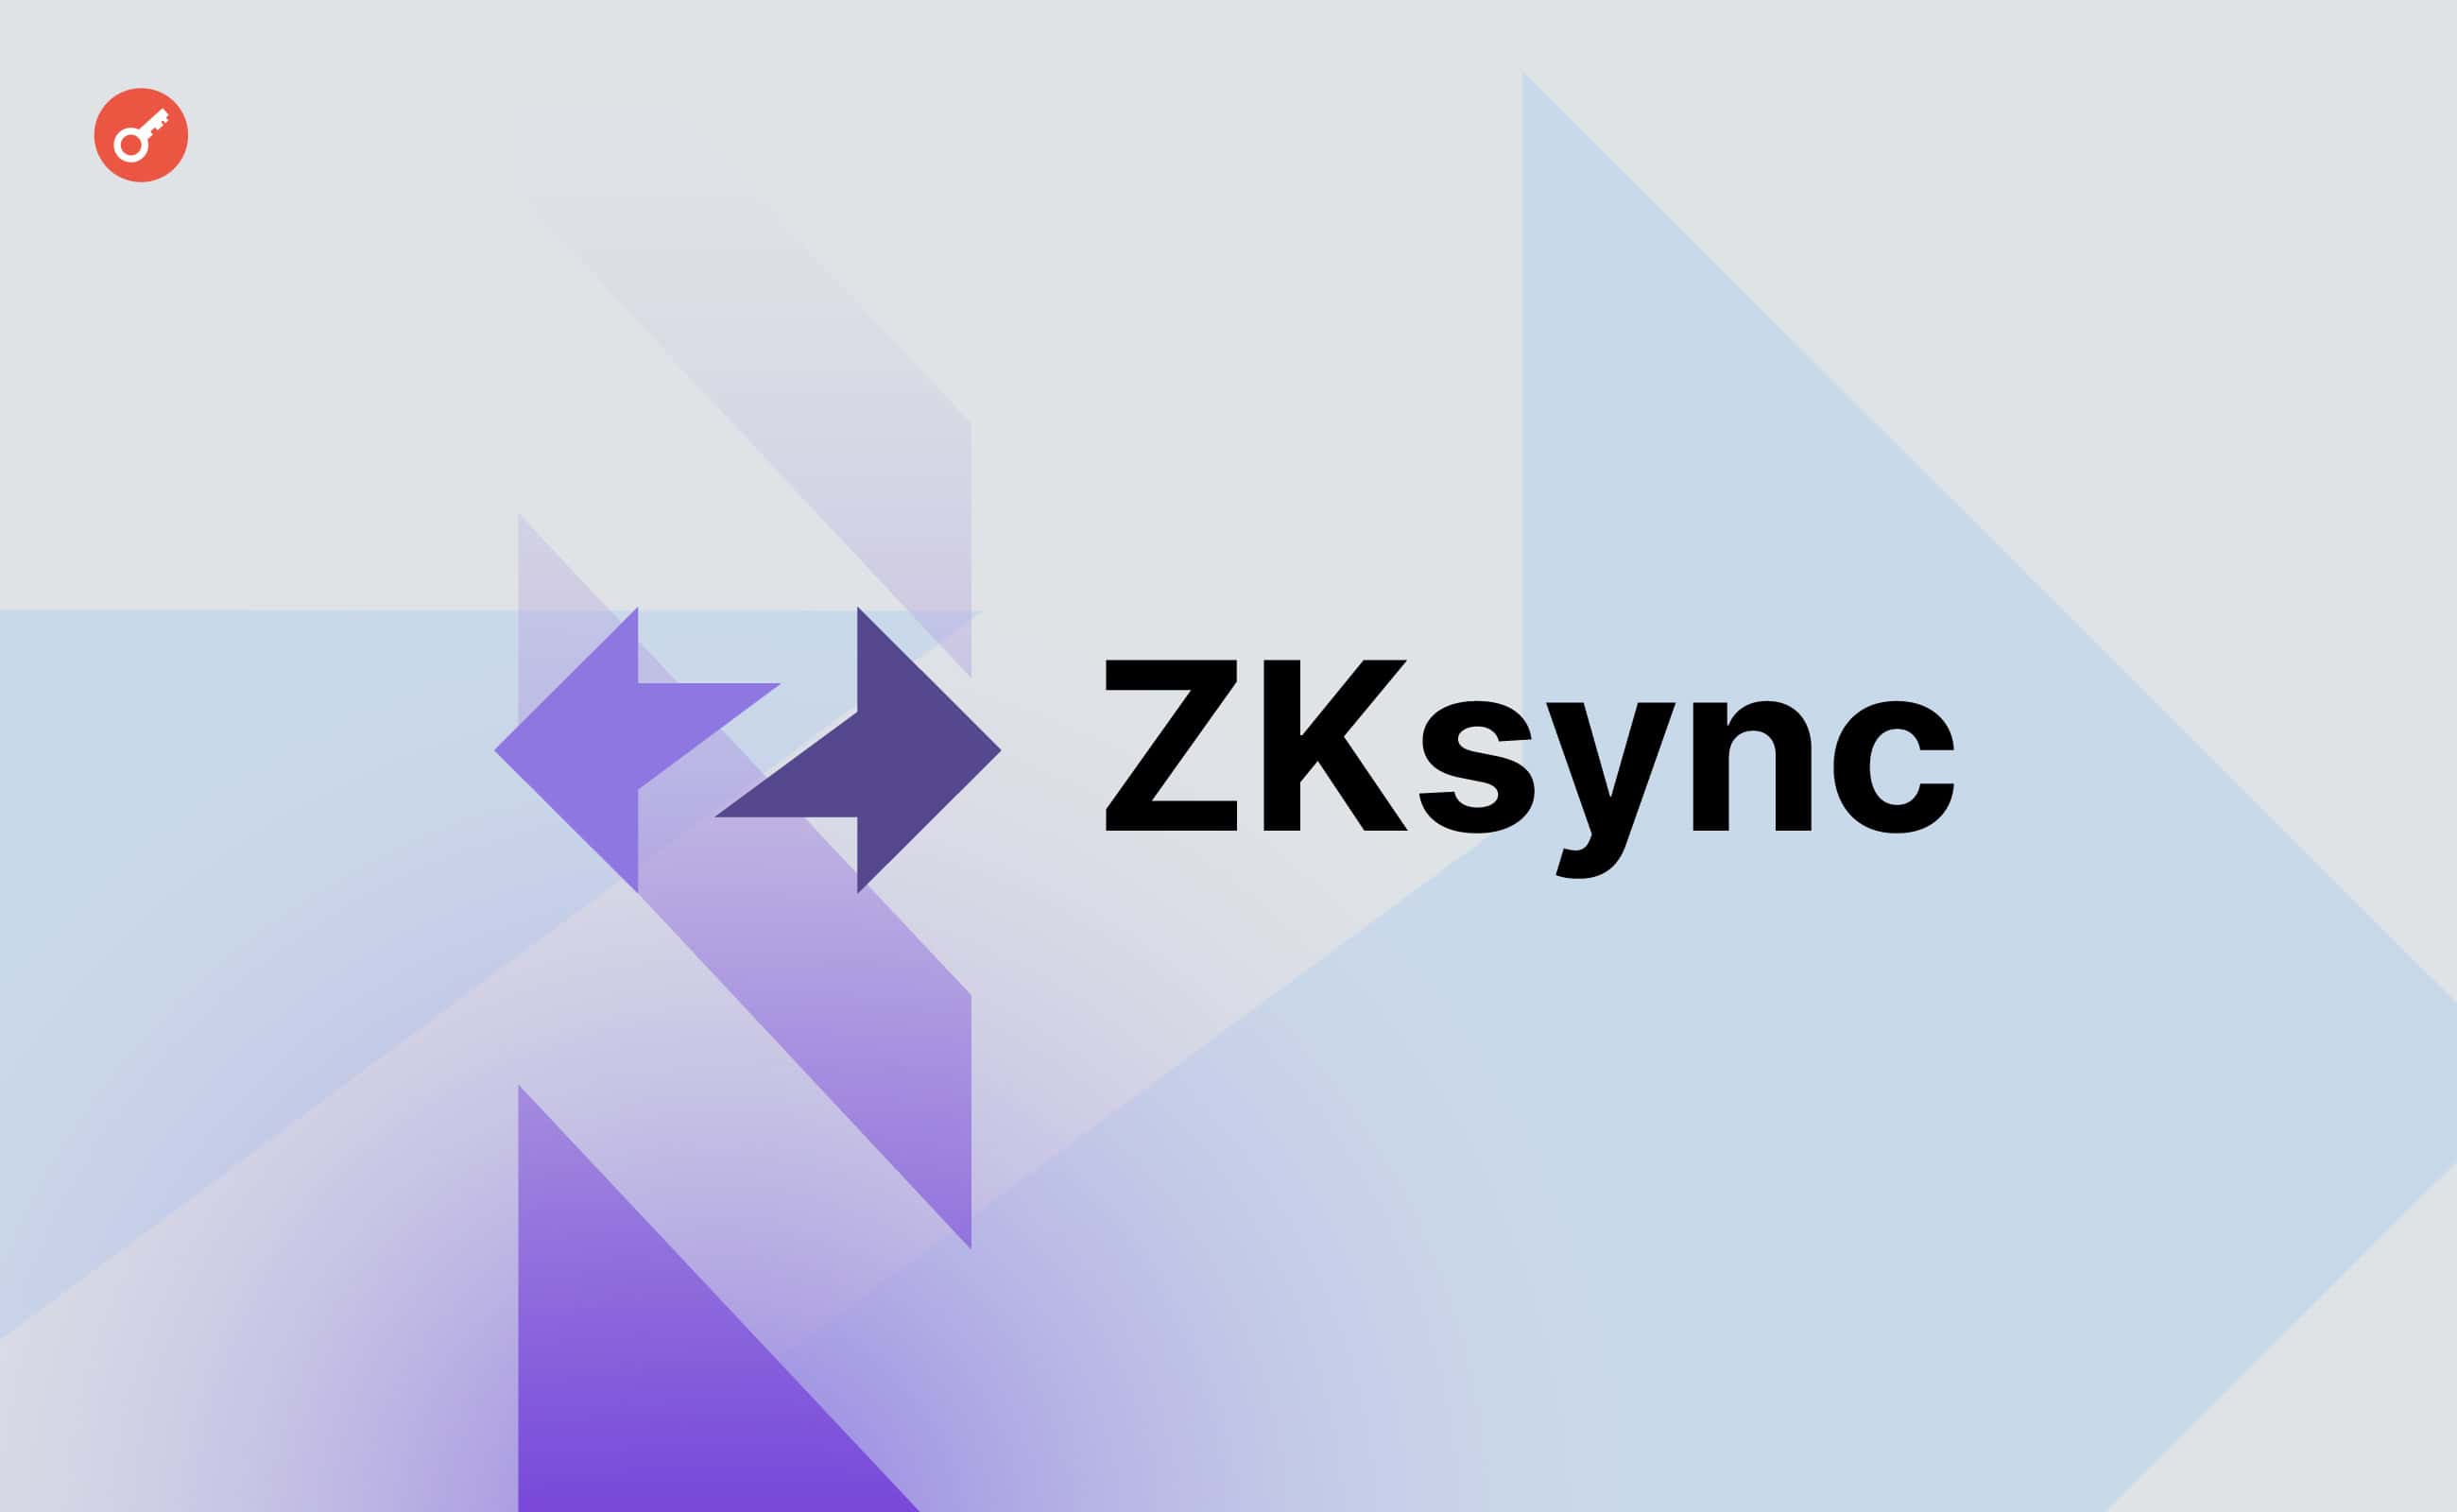 Команда ZKsync представит больше подробностей о распределении токенов проекта на этой неделе. Заглавный коллаж новости.